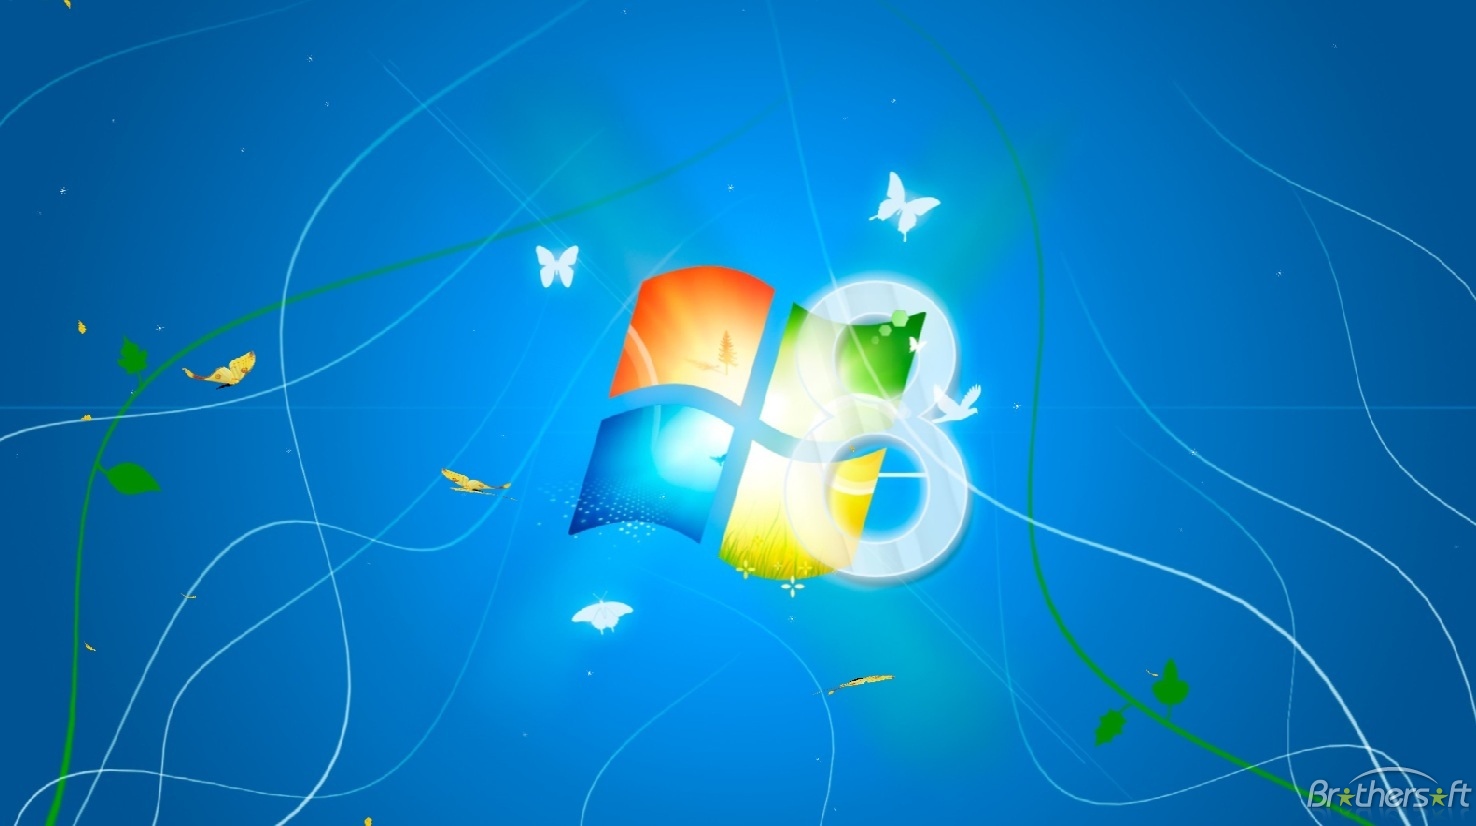 Hình nền động Windows 8 Light miễn phí, tạo điểm nhấn riêng cho màn hình máy tính của bạn. Với nhiều hiệu ứng đẹp mắt, cùng những gam màu tươi sáng, hình nền động Windows 8 Light sẽ khiến cho không gian làm việc của bạn trở nên thật tuyệt vời. Hãy tải ngay và cảm nhận ngay hôm nay!